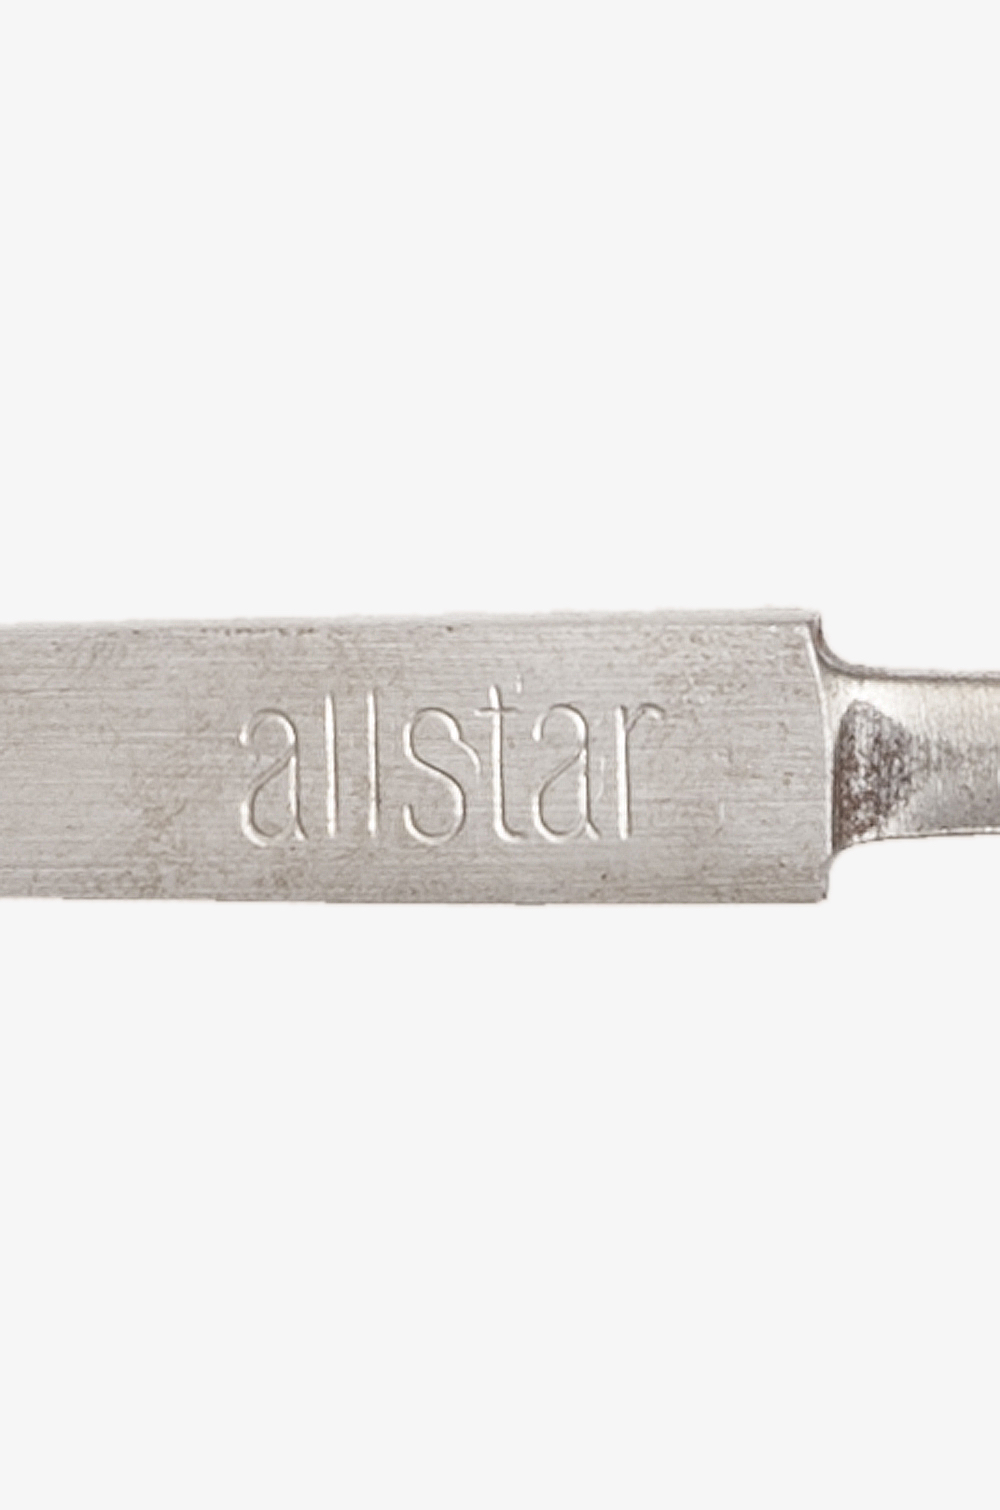 allstar Ecostar Foil Blade bare